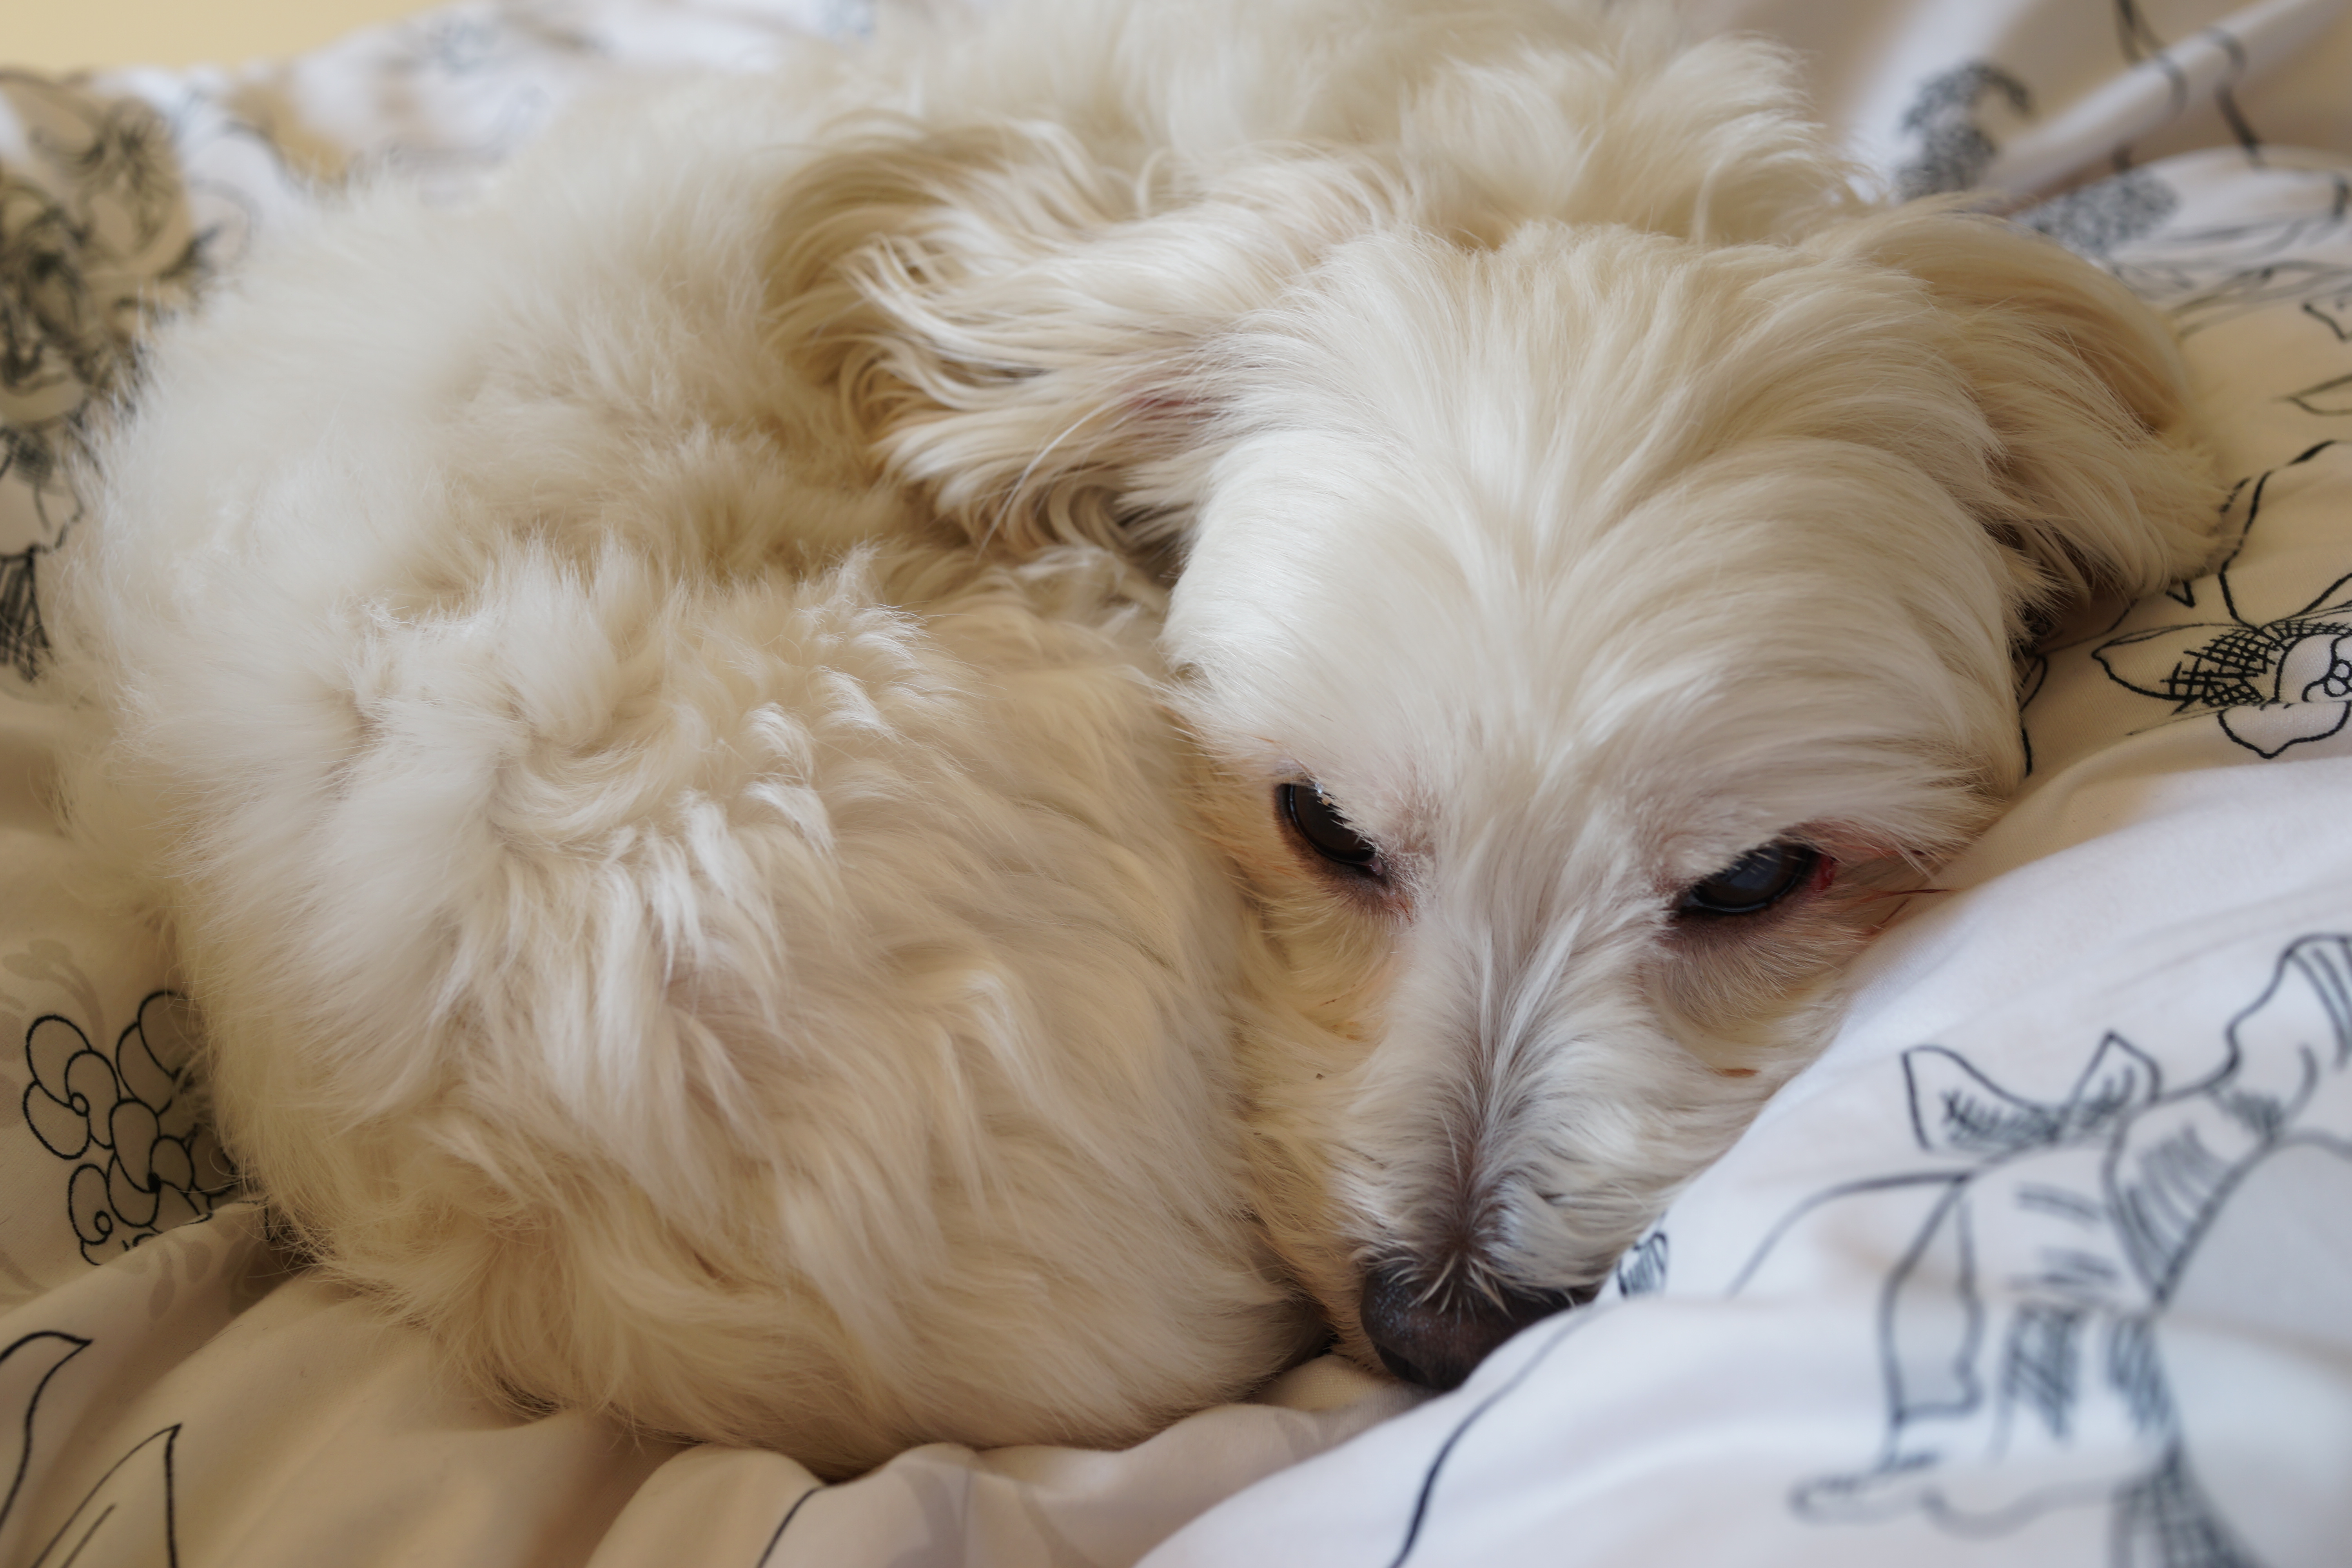 フリー画像素材 寒いから丸まって寝る犬 フリー素材のaphoto アフォト